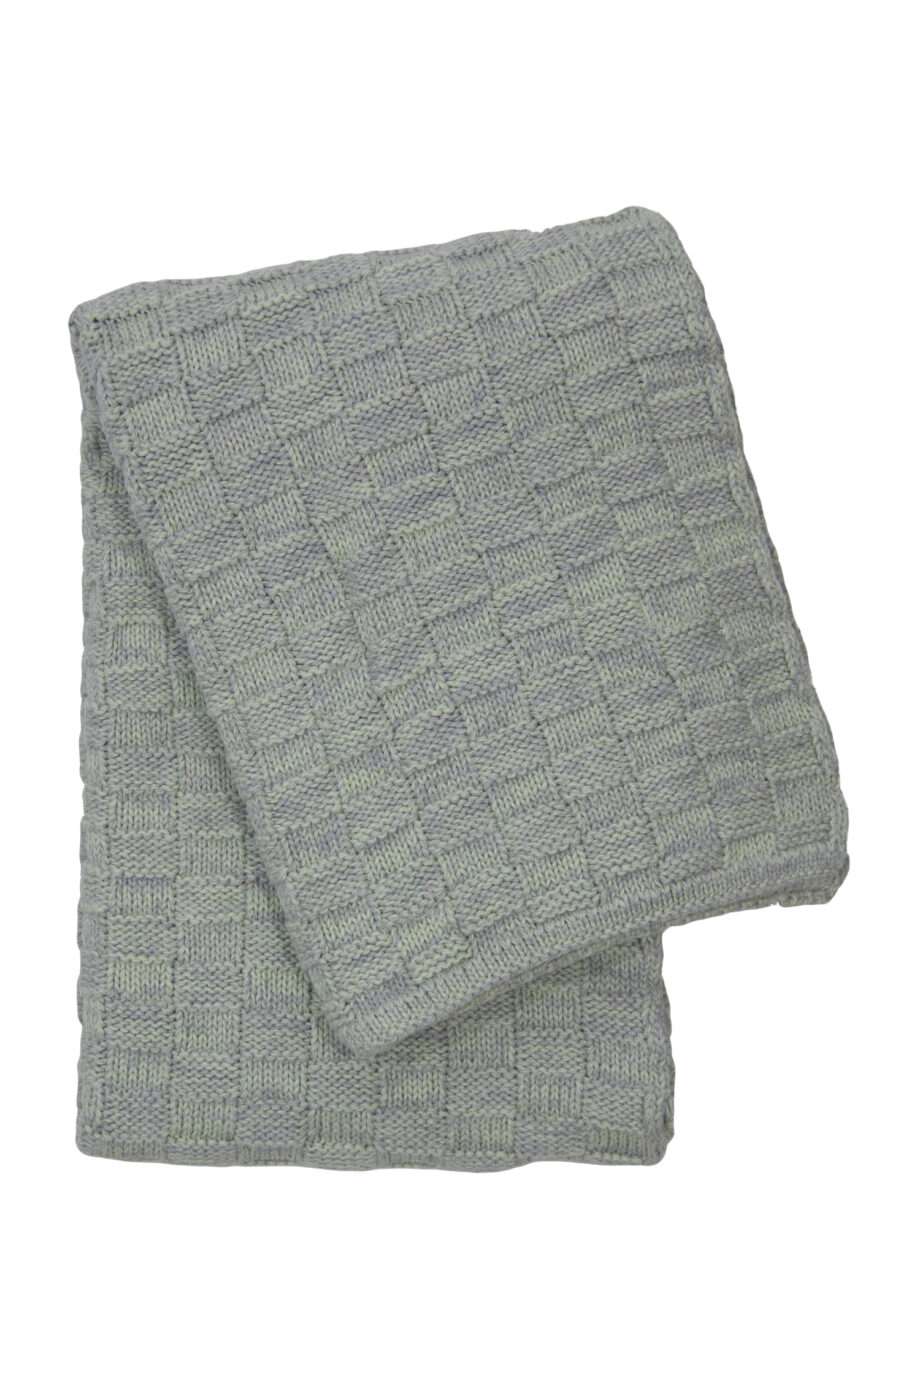 drops mêlée mint knitted cotton little blanket medium